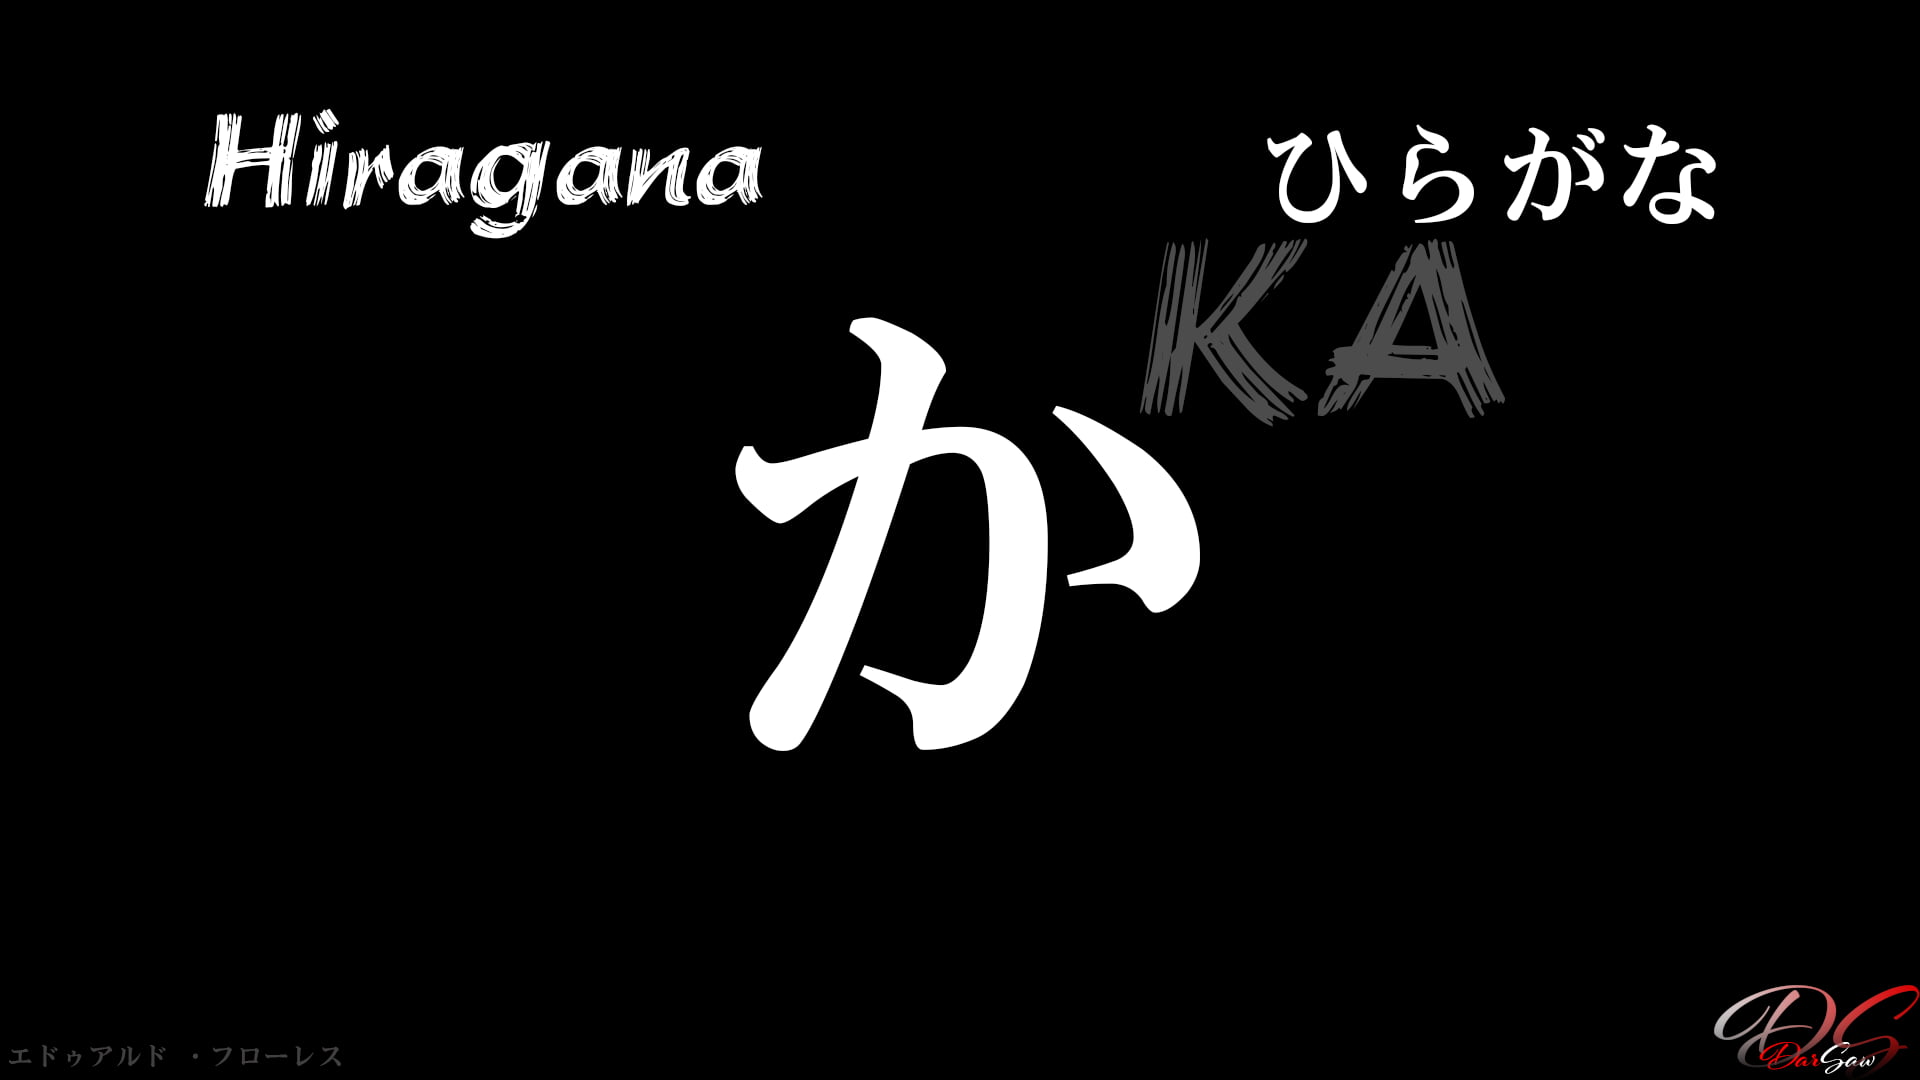 hiragana, Japones, estudiar